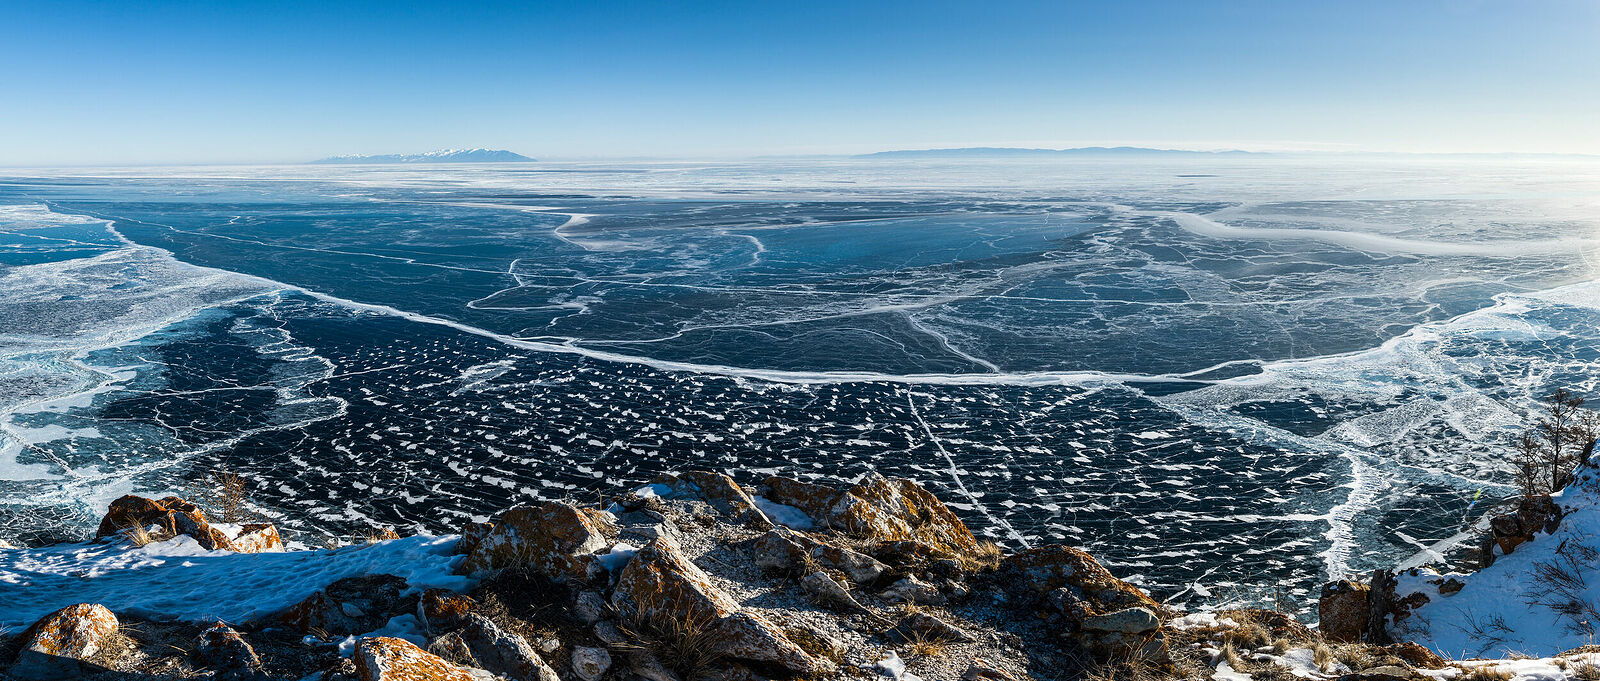 Sergey Pesterev. Kingdom of ice. Panorama of lake Baikal